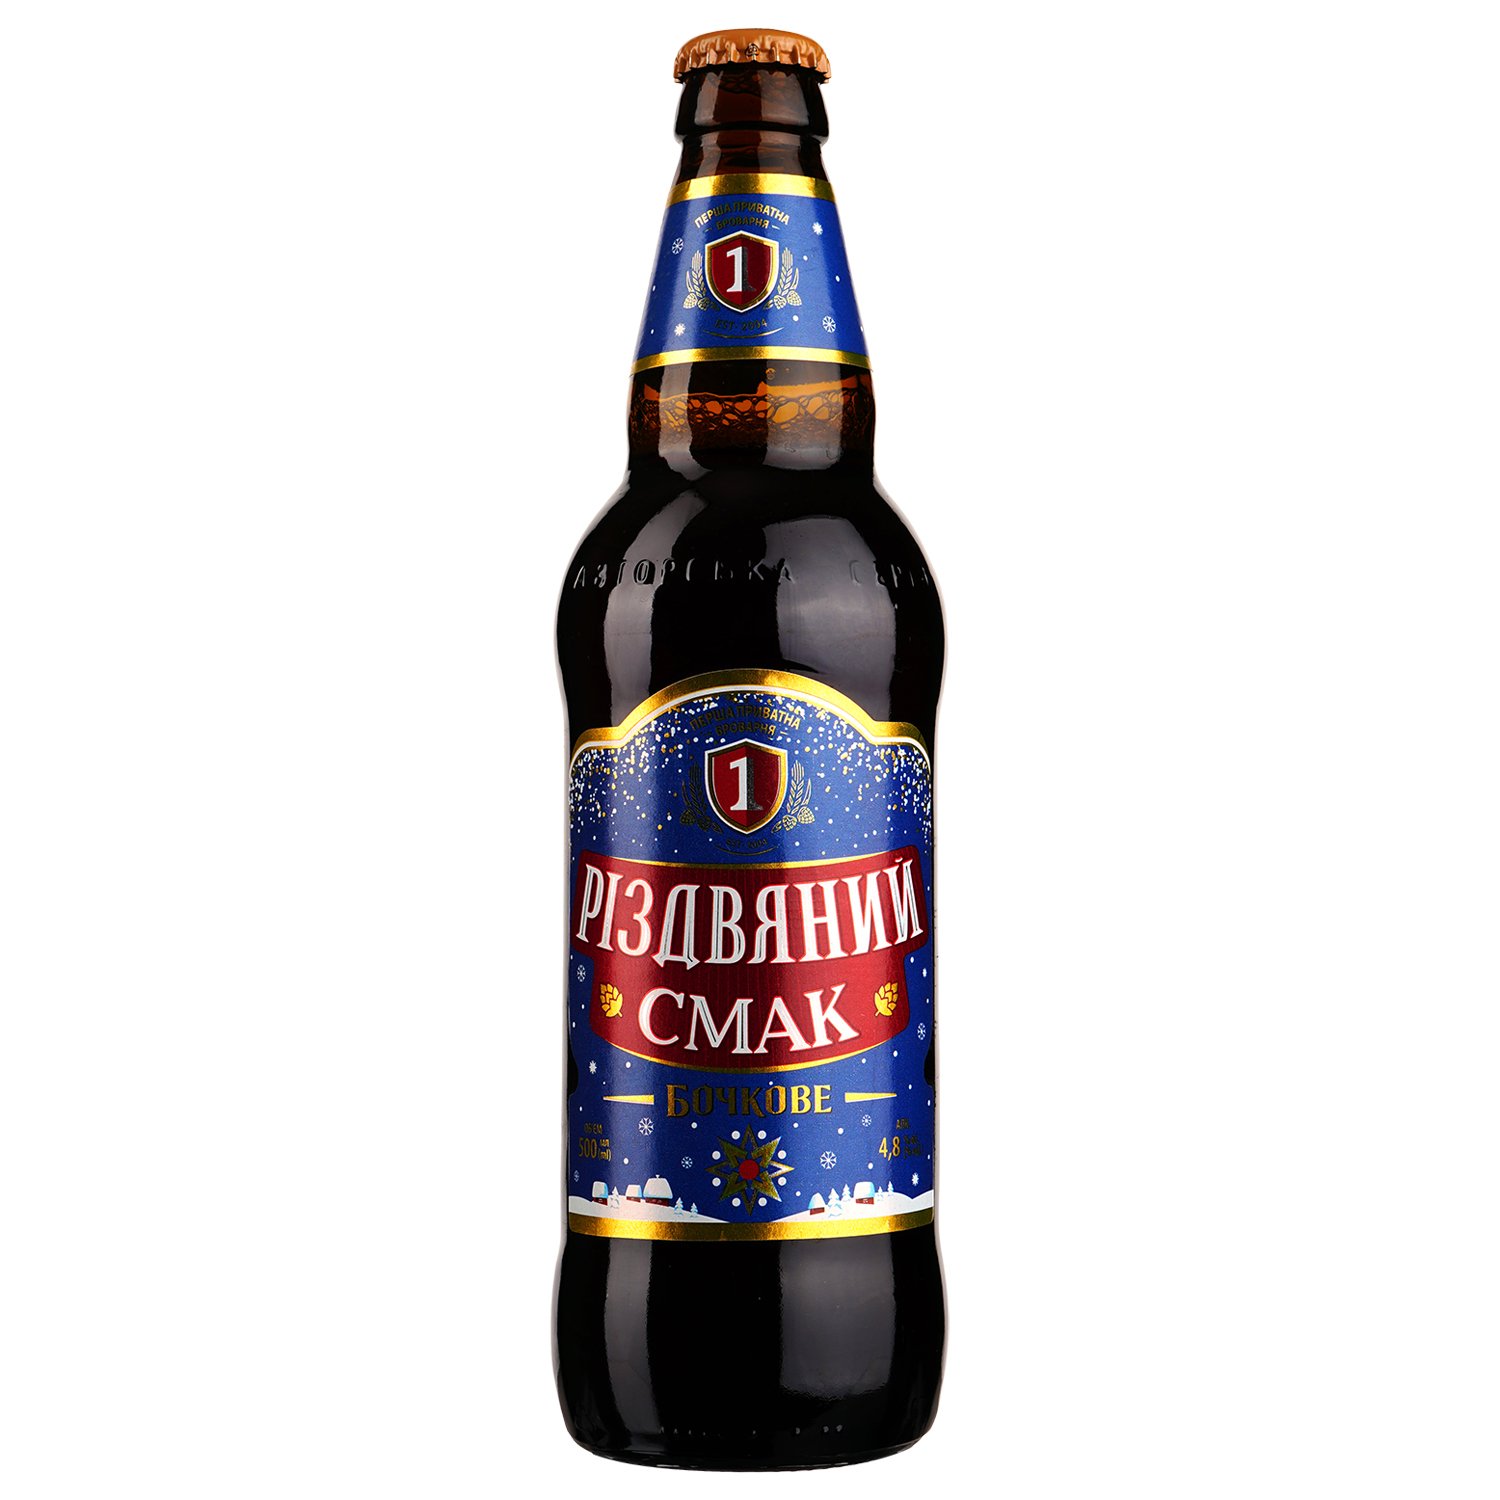 Пиво Перша Приватна Броварня Бочкове Різдвяний смак, темное, 4,8%, 0,5 л - фото 1